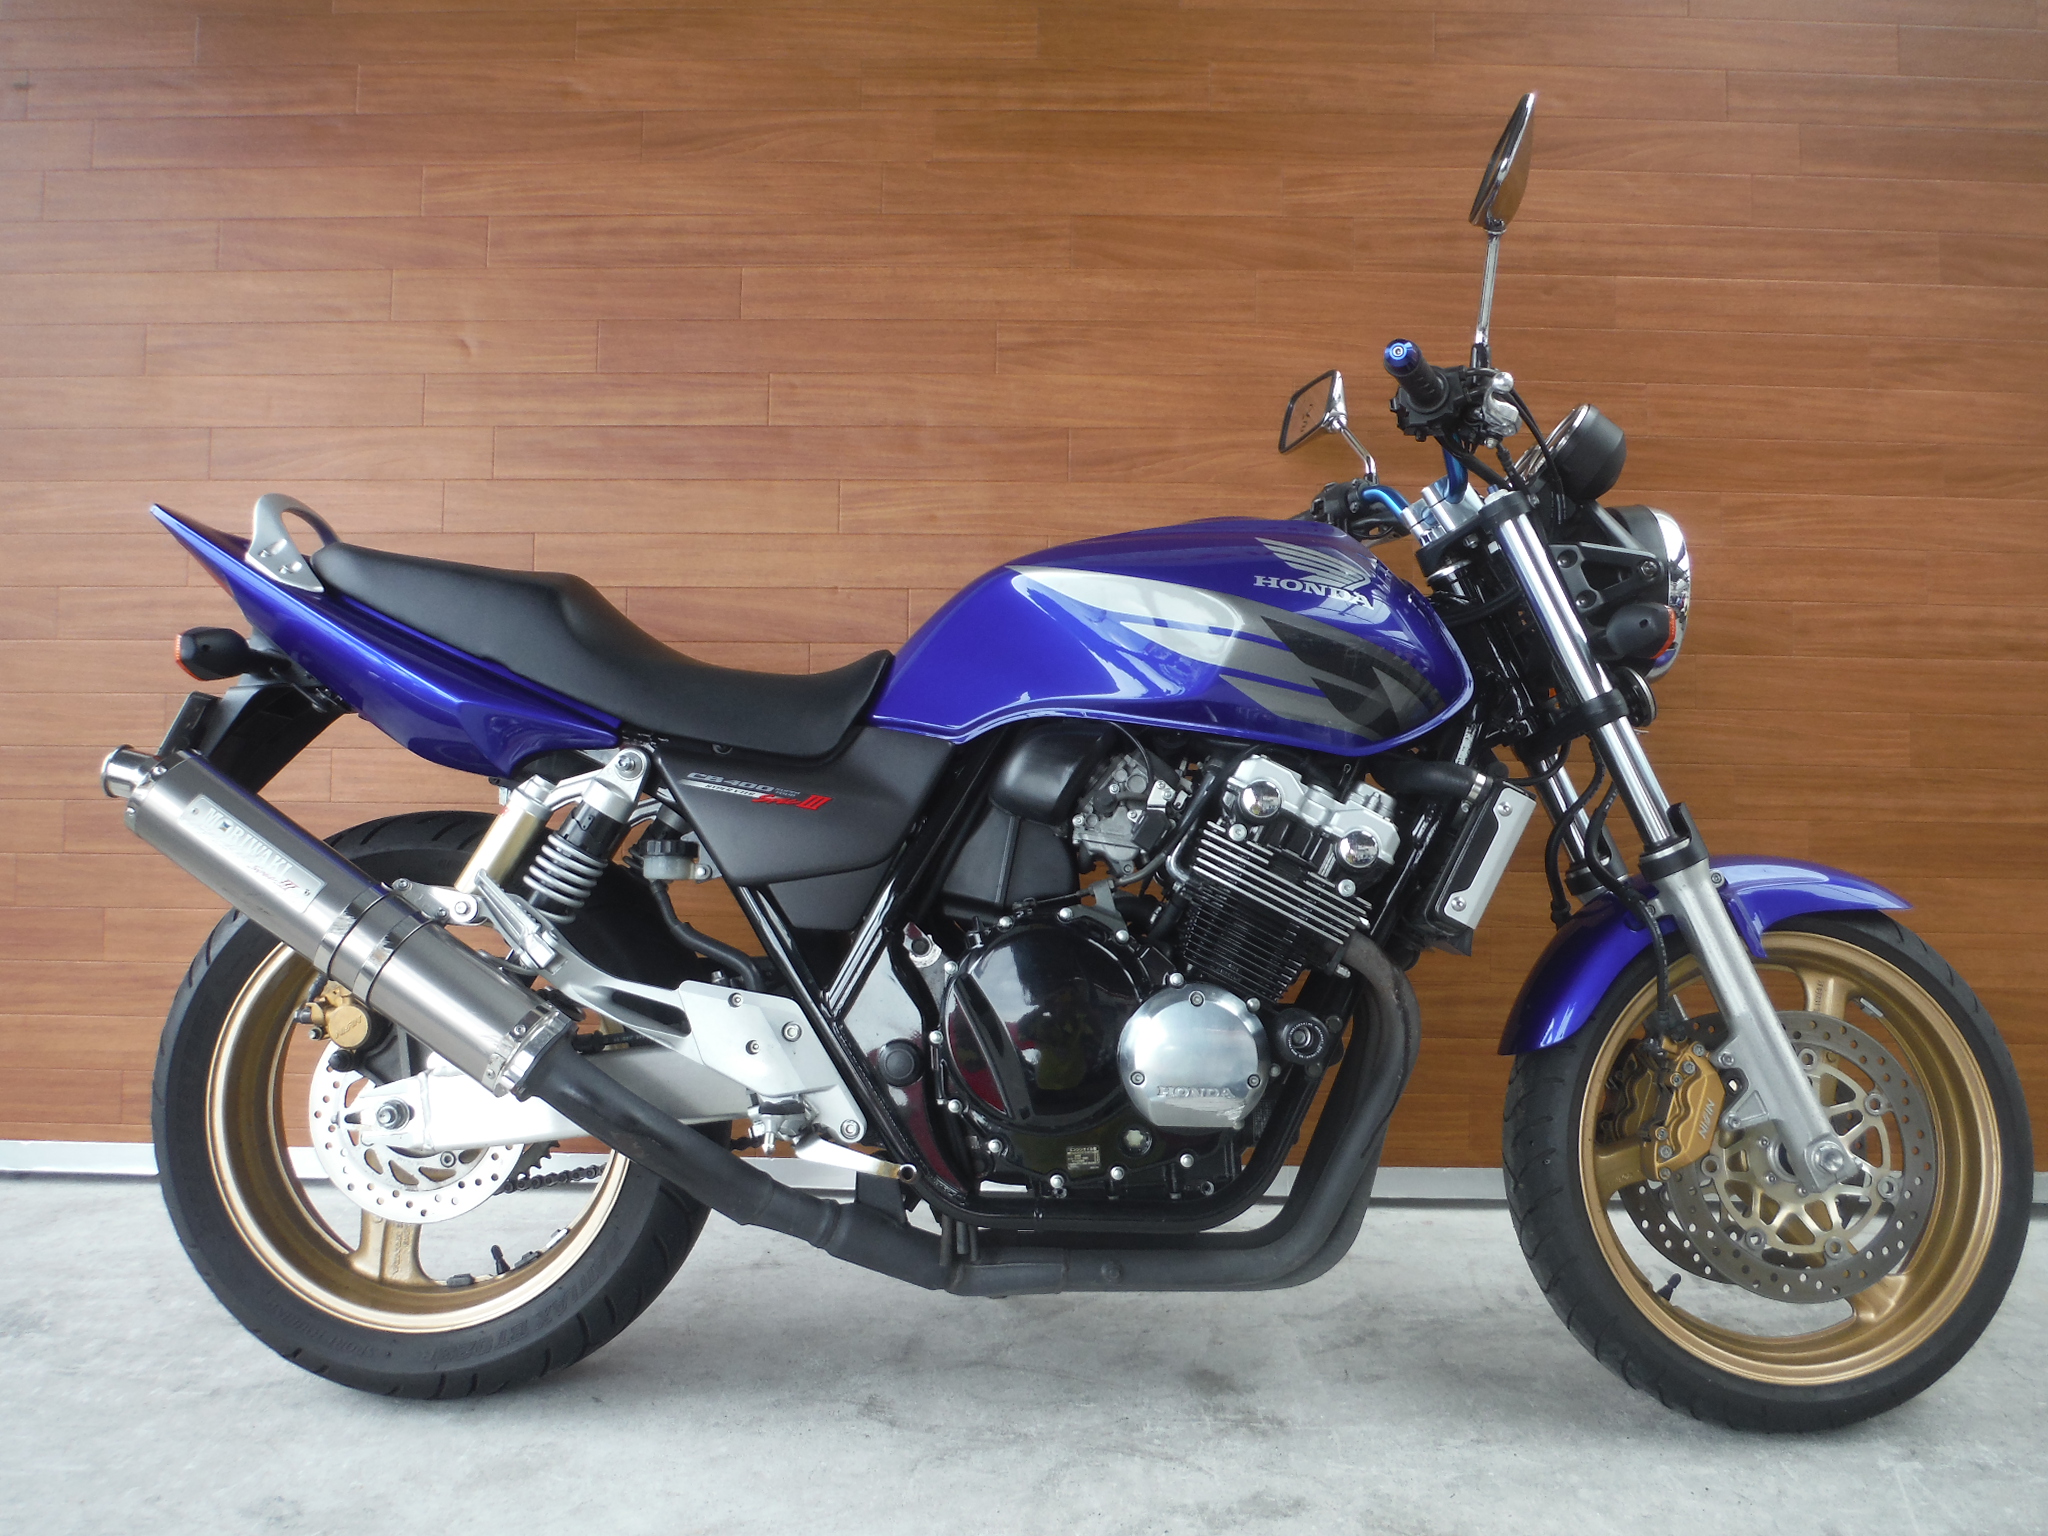 熊本中古車バイク情報 ホンダ Cb400sf 400 05年モデル 青 熊本のバイクショップ アール バイクの新車 中古 車販売や買取 レンタルバイクのことならおまかせください